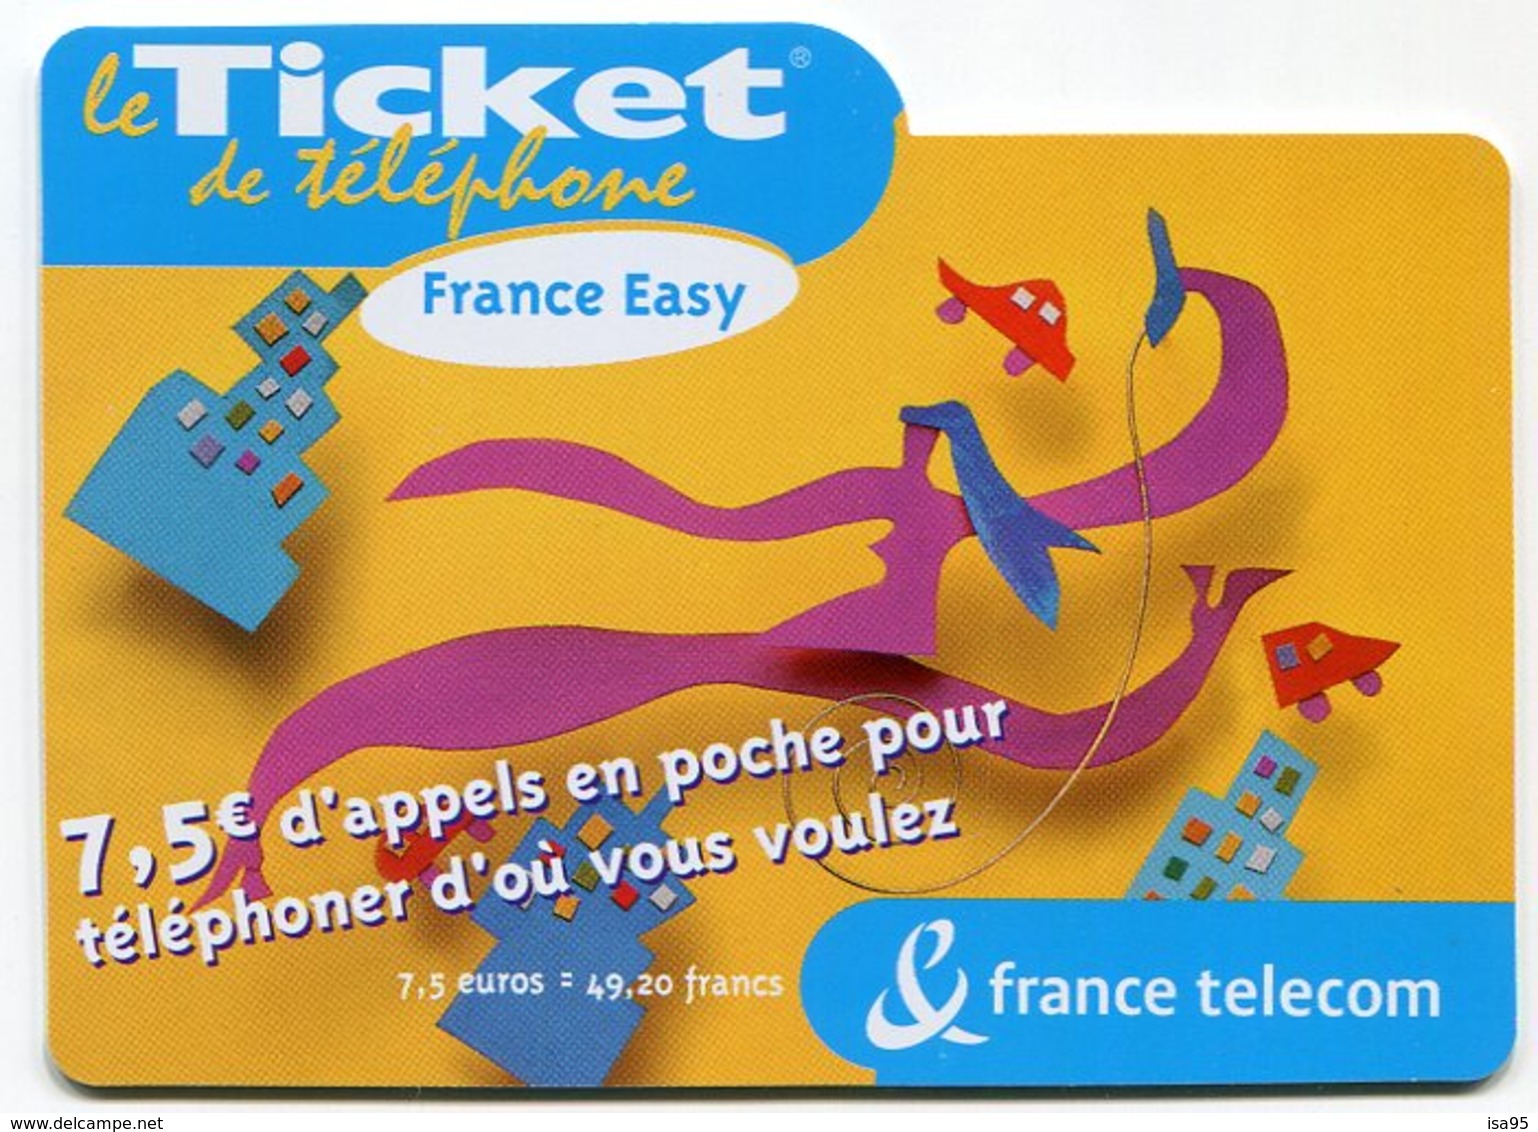 TELECARTE-LE TICKET DE TELEPHONE FRANCE EASY-2004-7.5€ - Biglietti FT